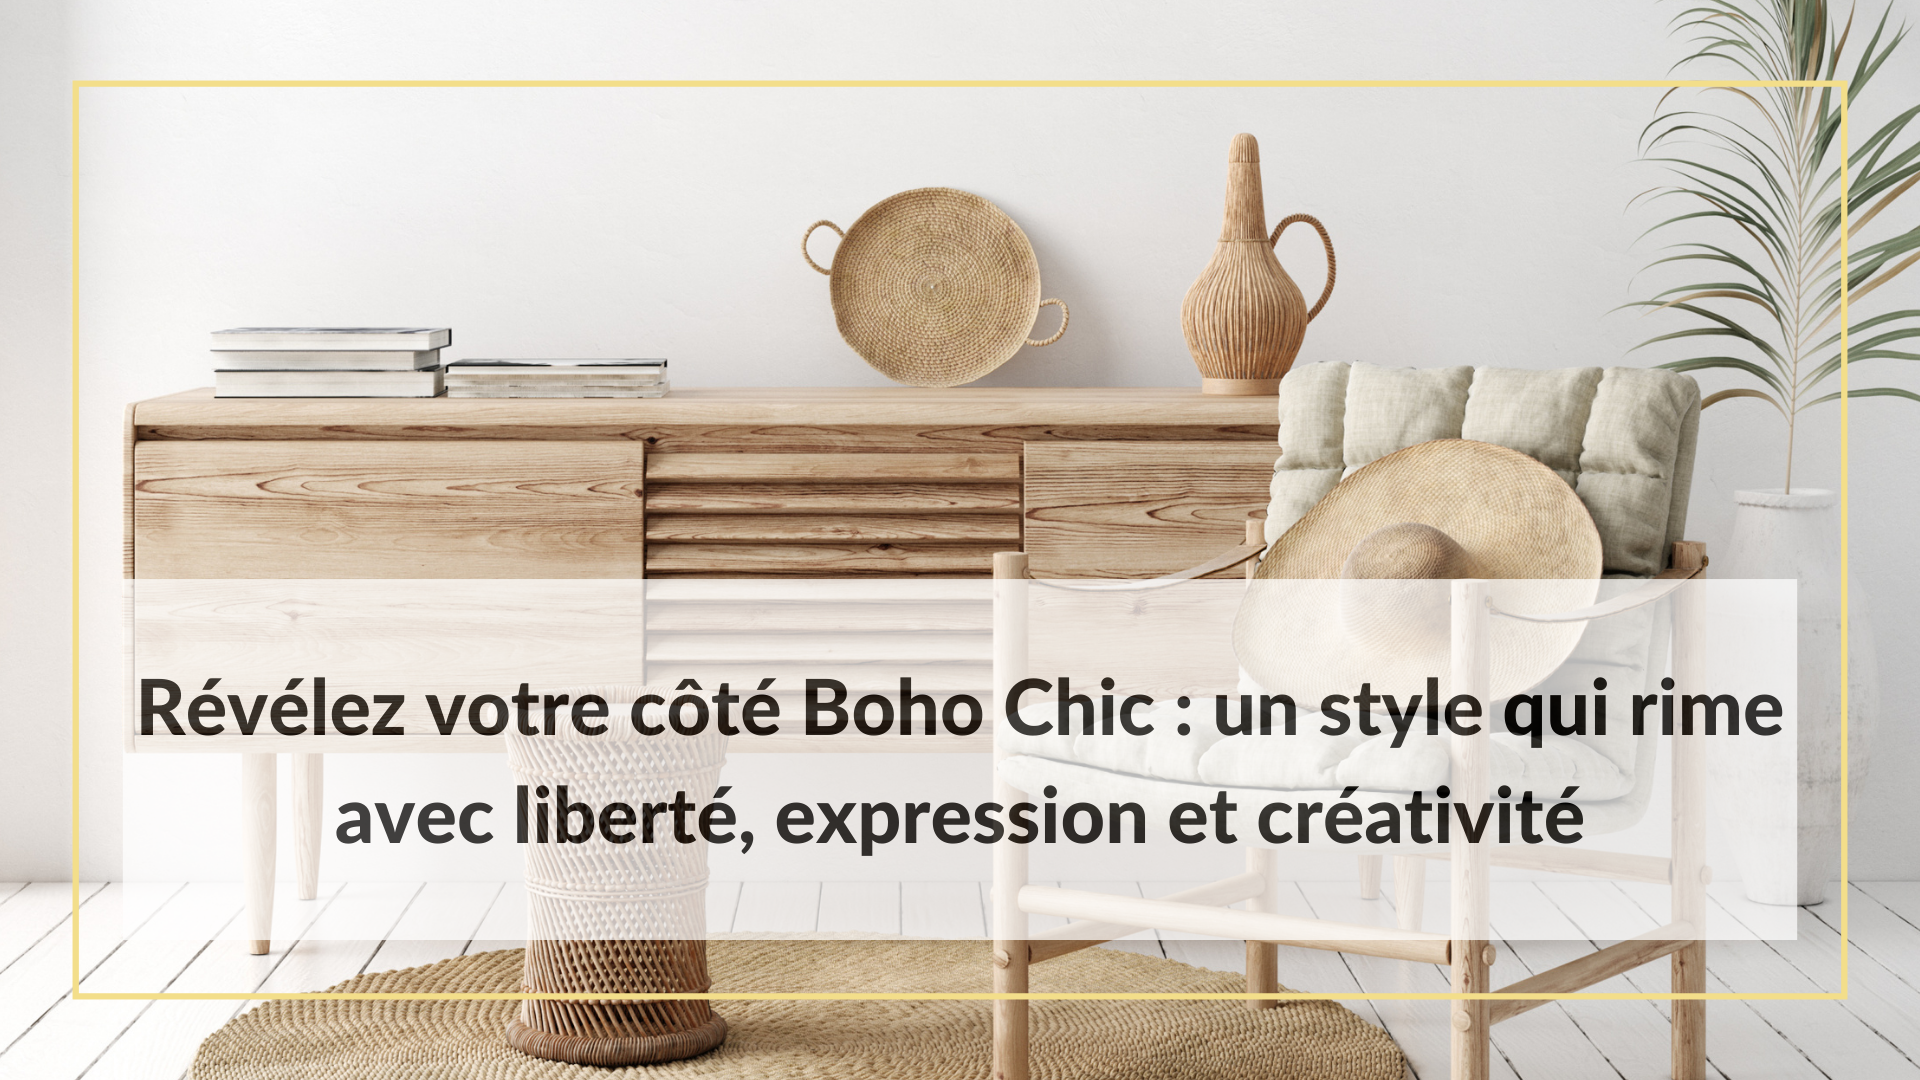 Révélez votre côté Boho Chic : un style qui rime avec liberté, expression et créativité